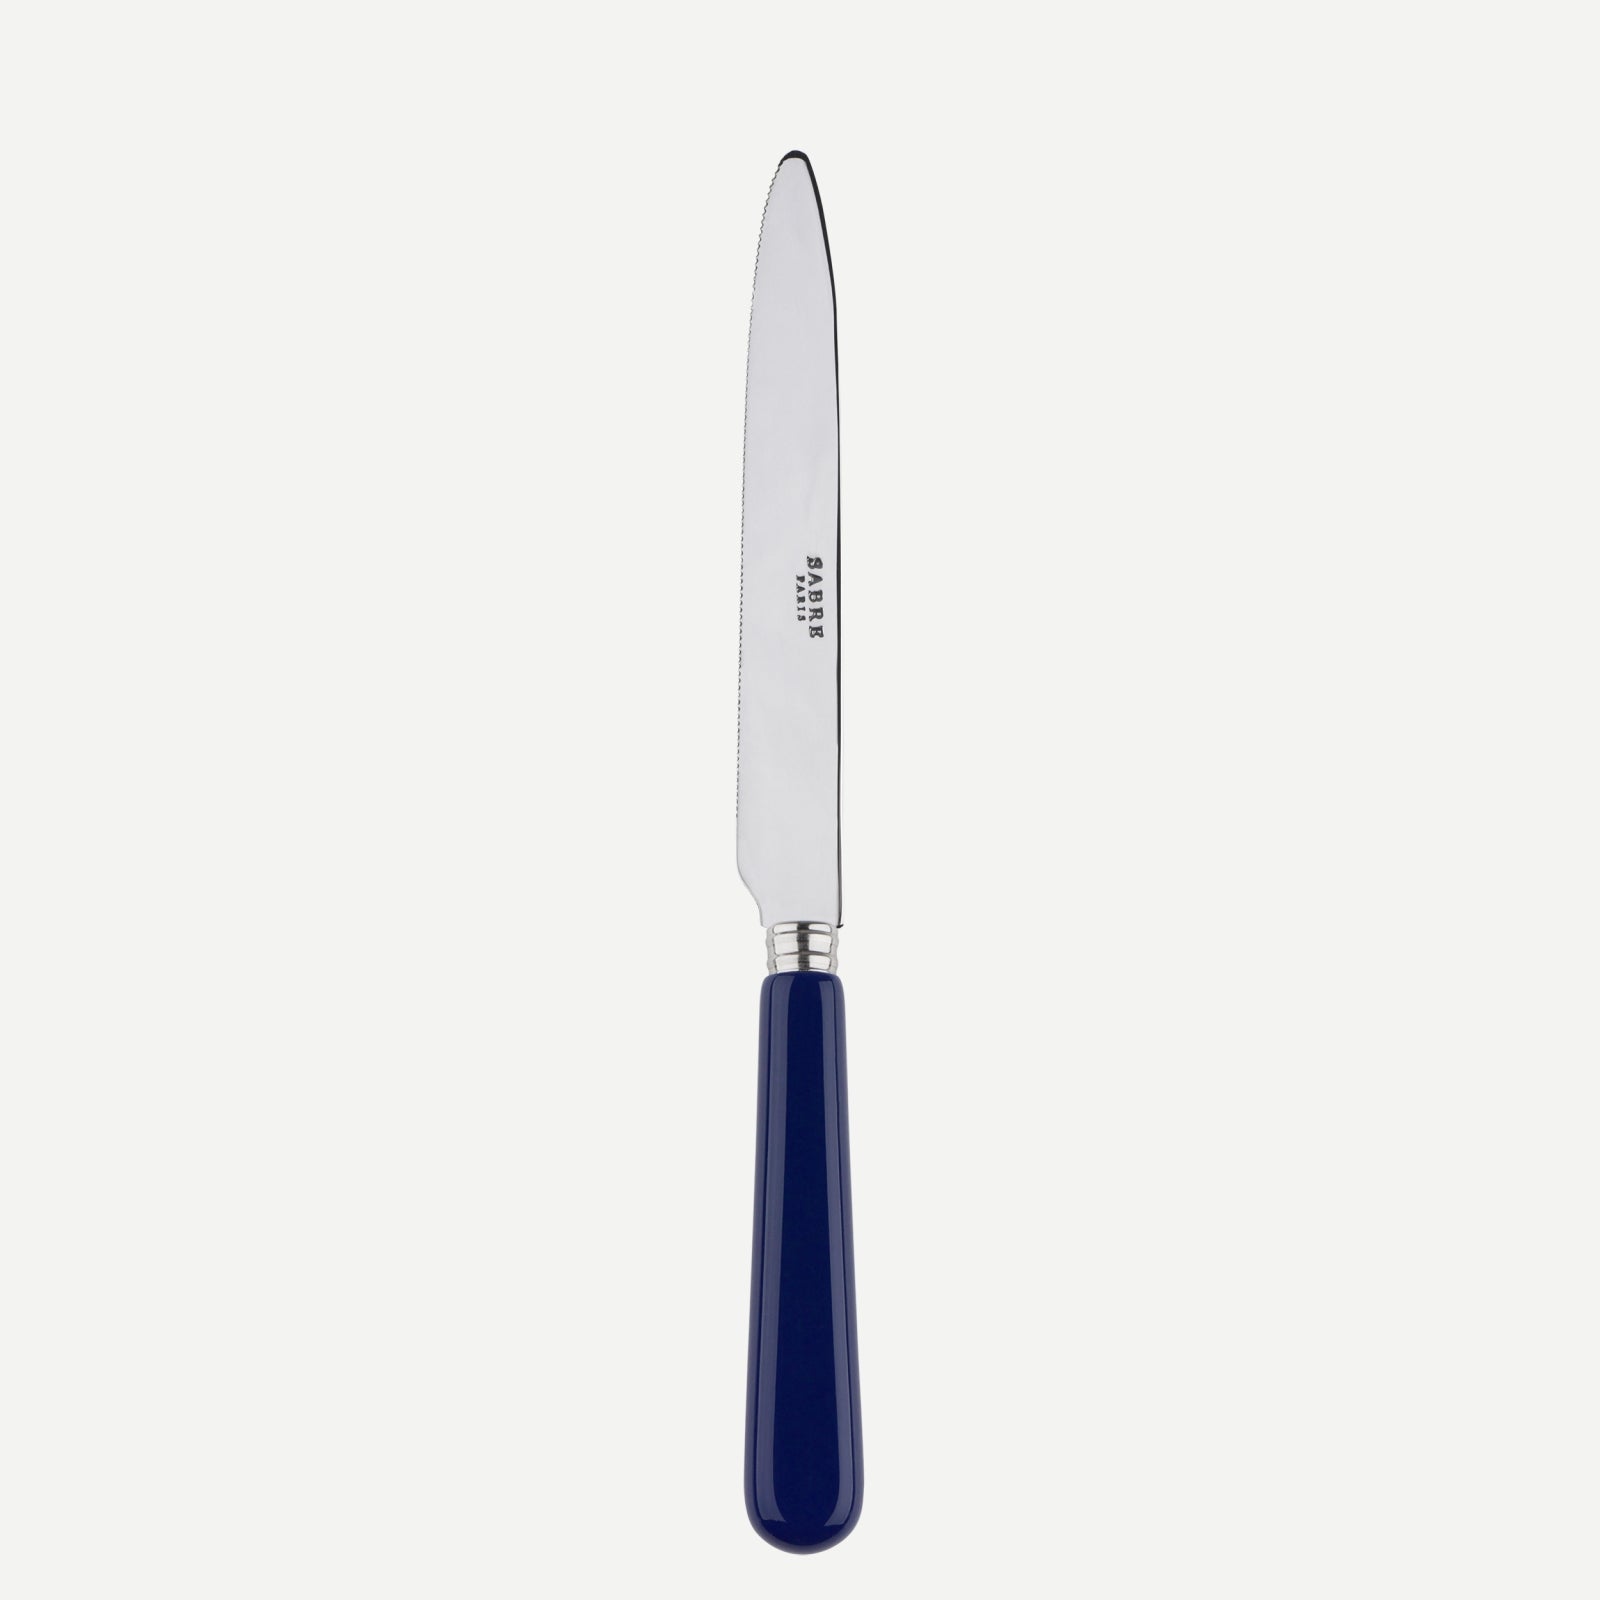 Messer mit Wellenschliff - Pop unis - Navy blau